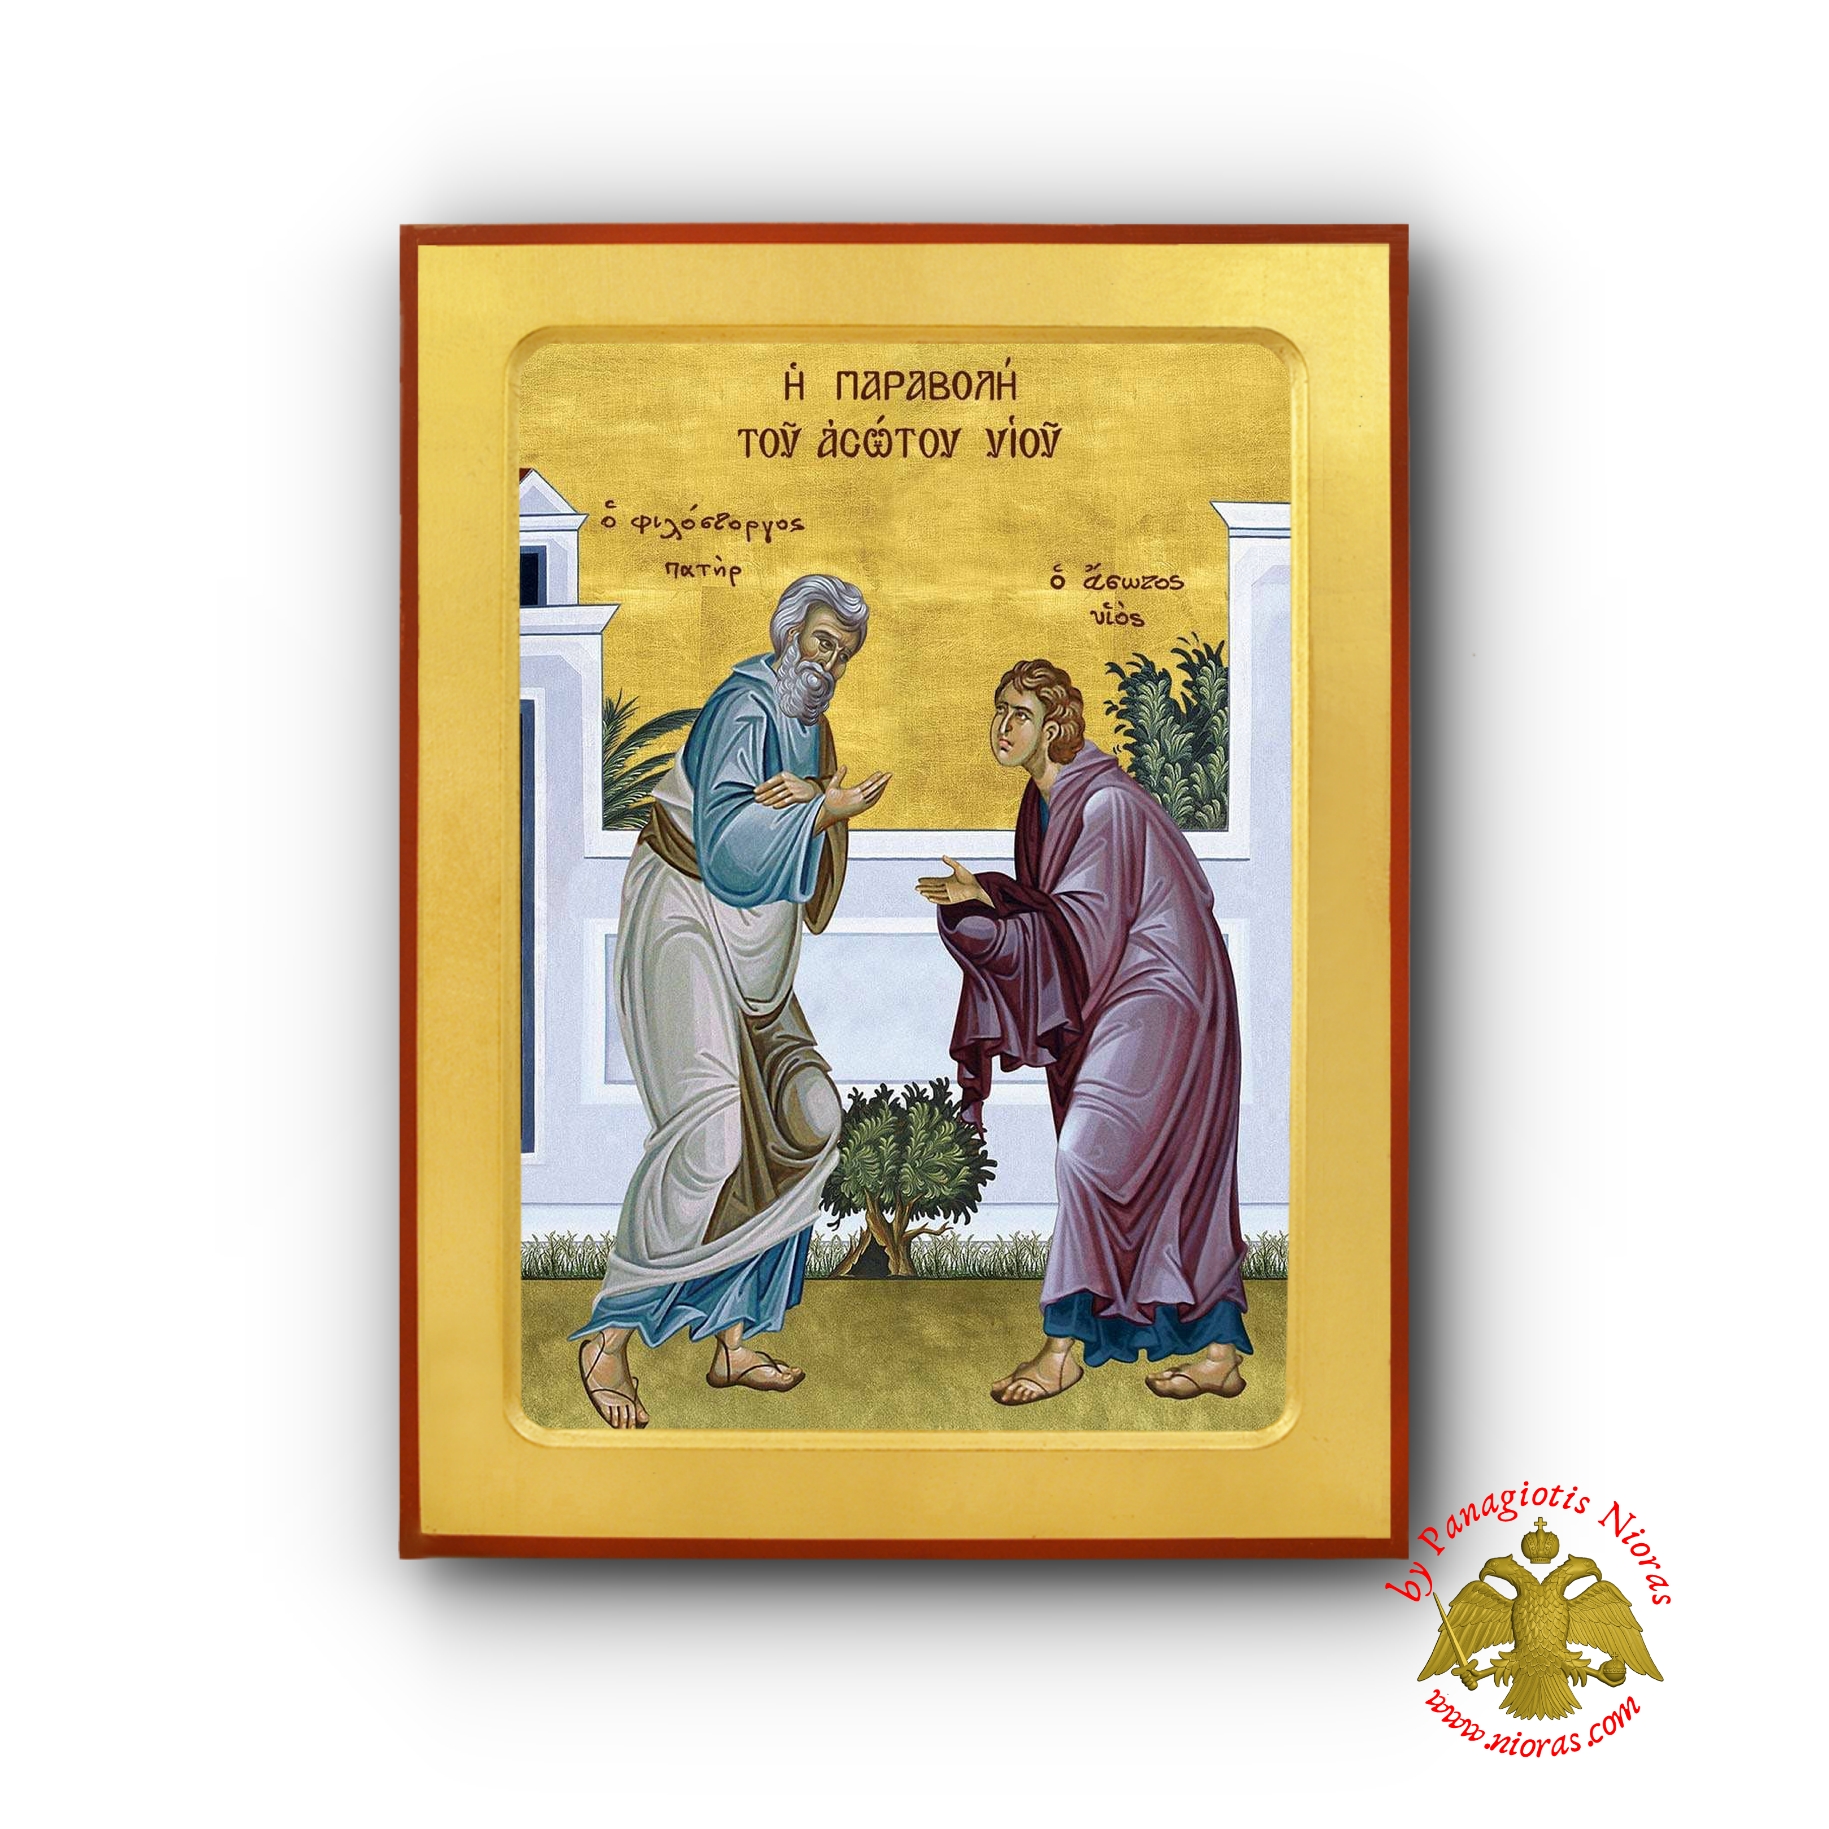 Η Παραβολη του Ασωτου Υιου Ξύλινη Βυζαντινή Εικόνα